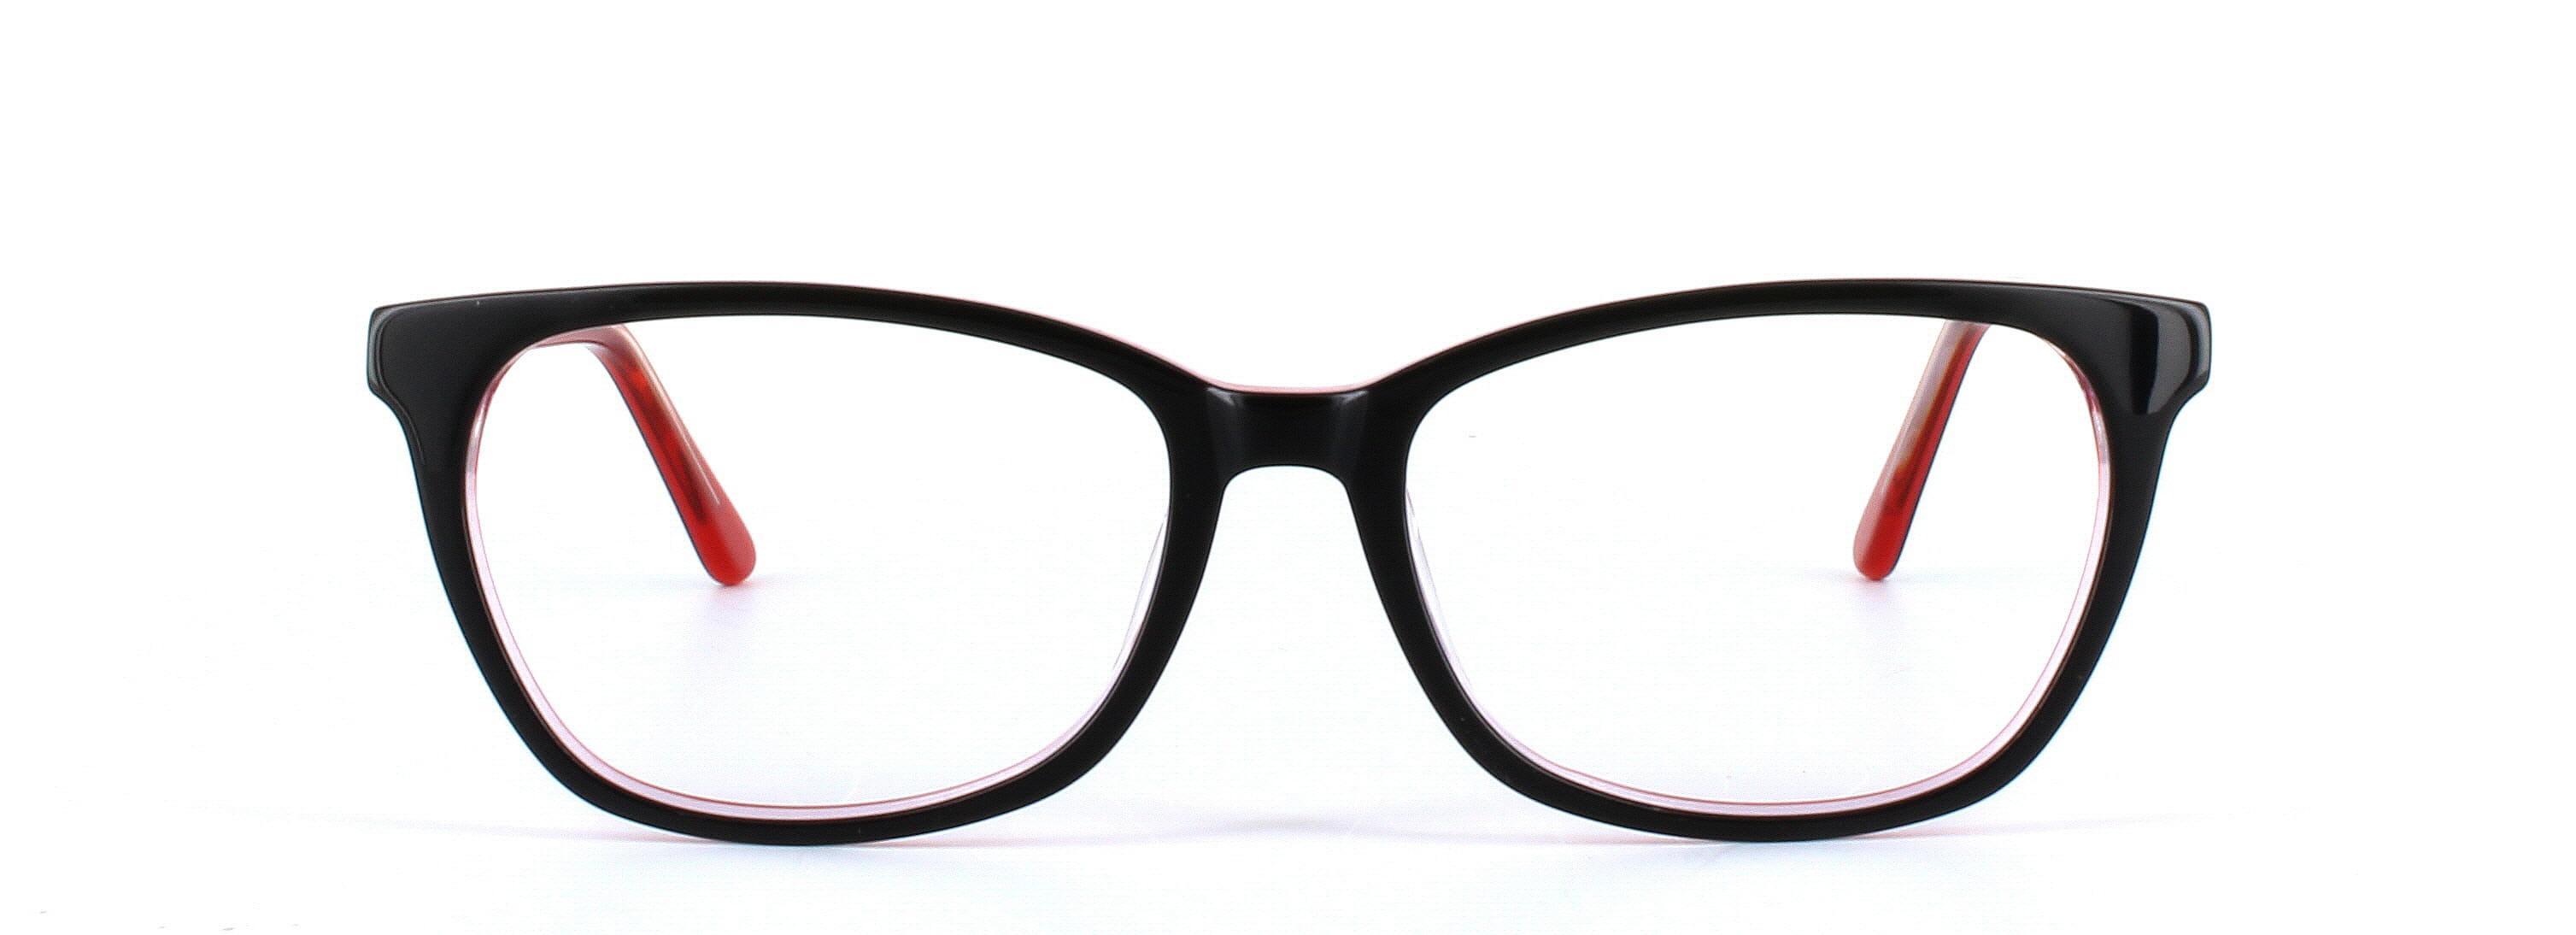 Jade Black Full Rim Cat Eye Acetate Glasses - Image View 5